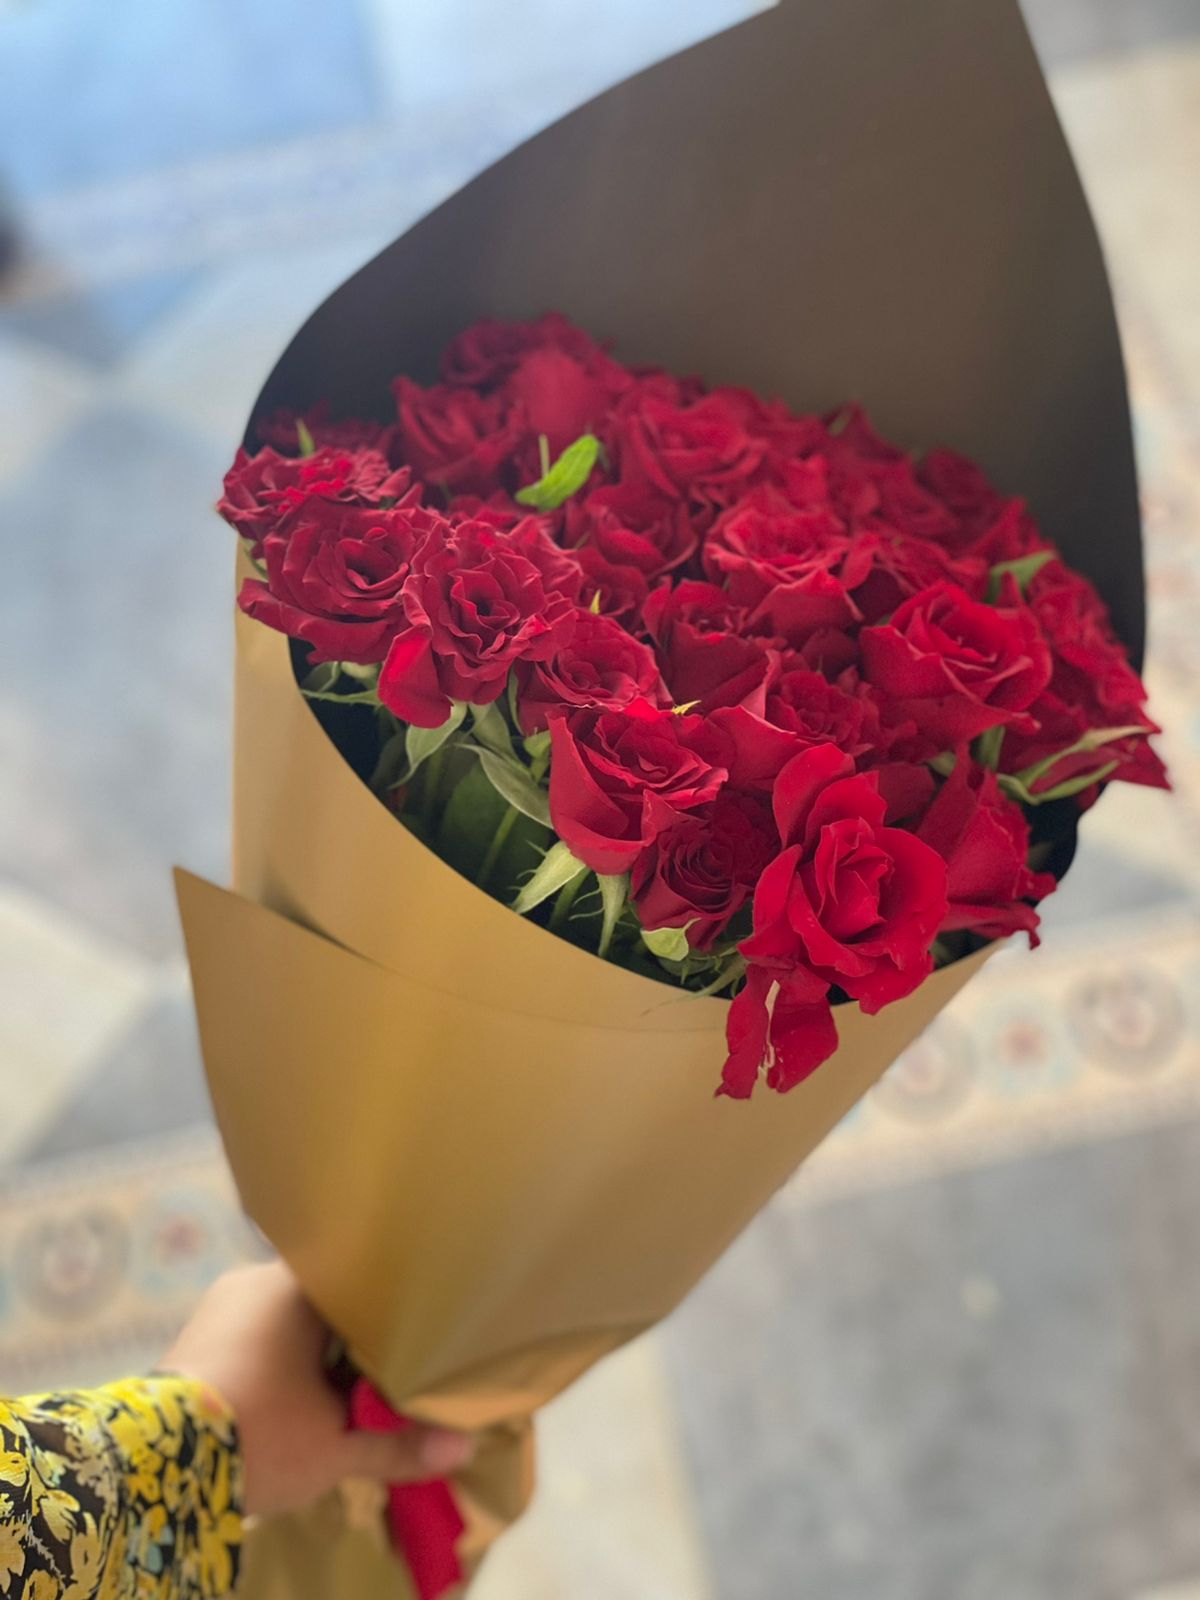 Livraison de fleurs au Maroc - 7j sur 7 - Dès 190dhs (18€) (21$)